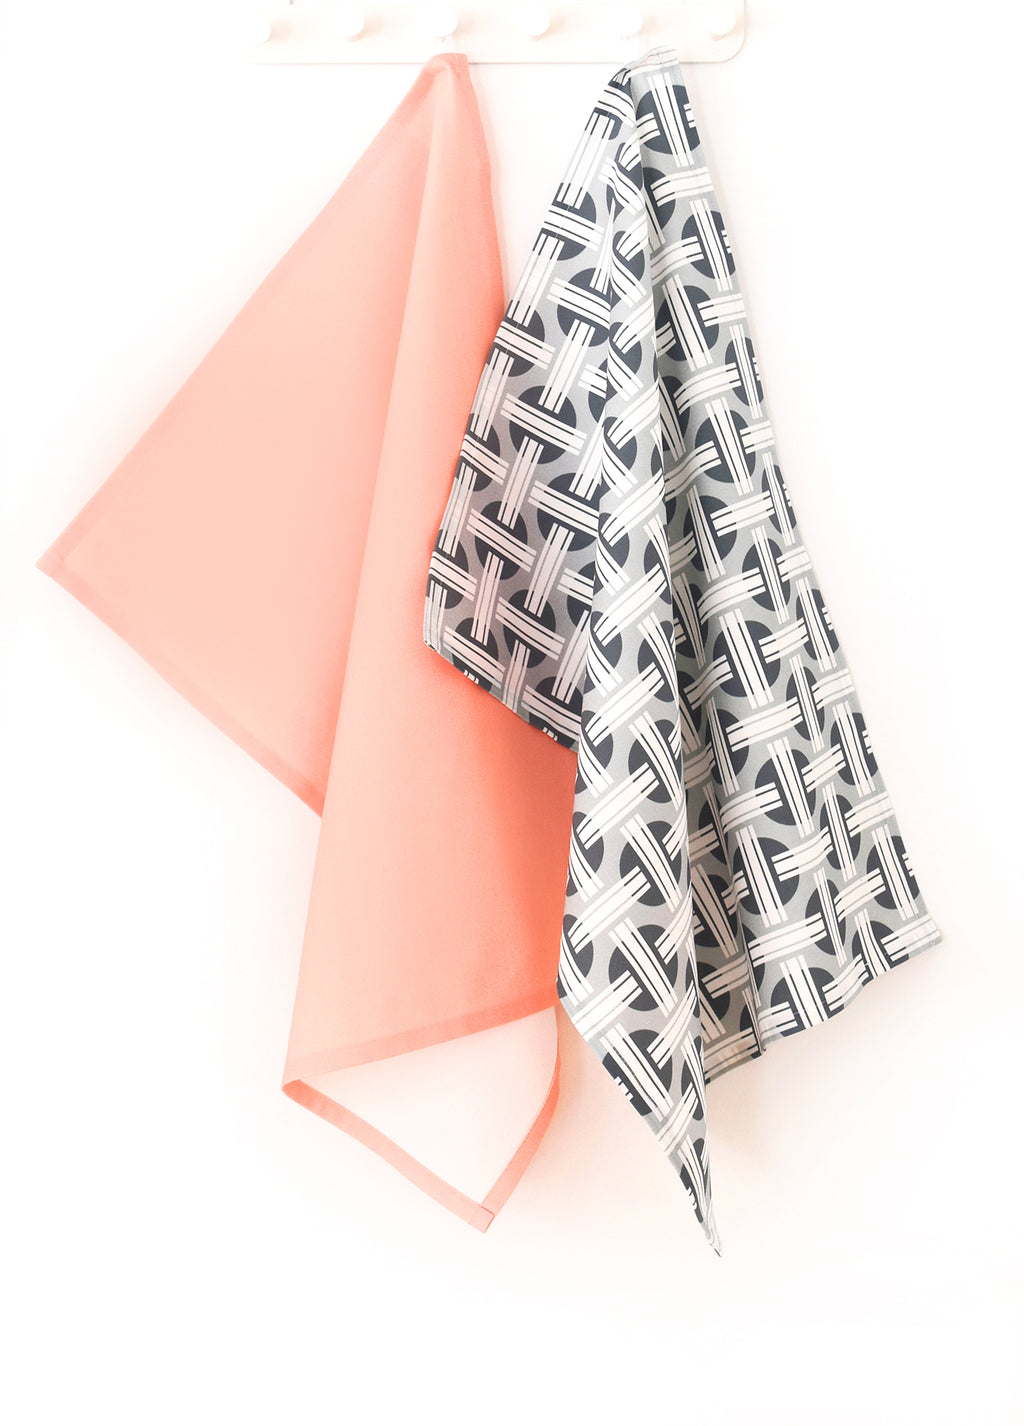 Orient Linen Cotton Tea Towel (18.5x25) – Set of 2 (Patterned Pale Grey & Solid Salmon)